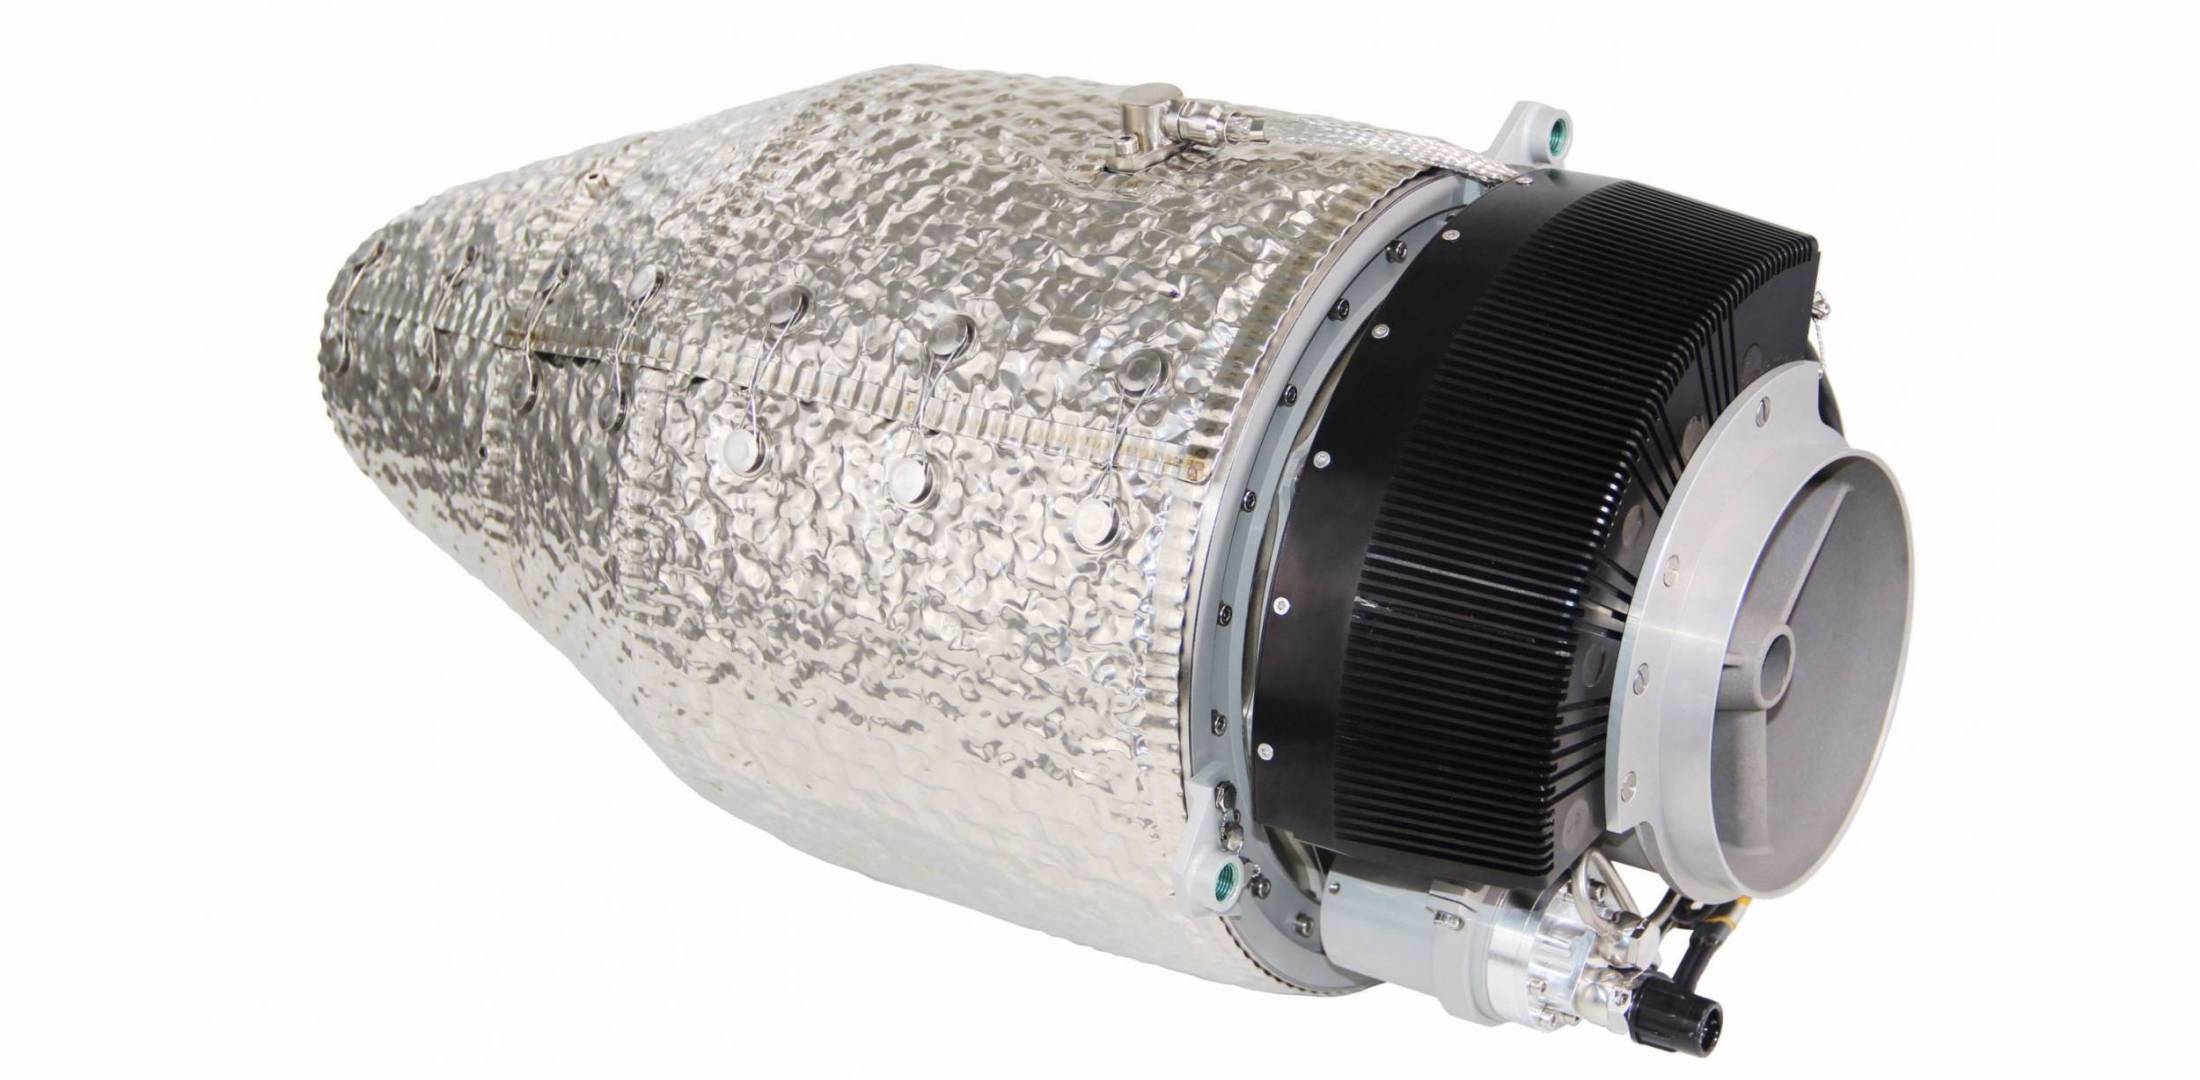 PBS Velka Bites TJ80-120 turbojet engine